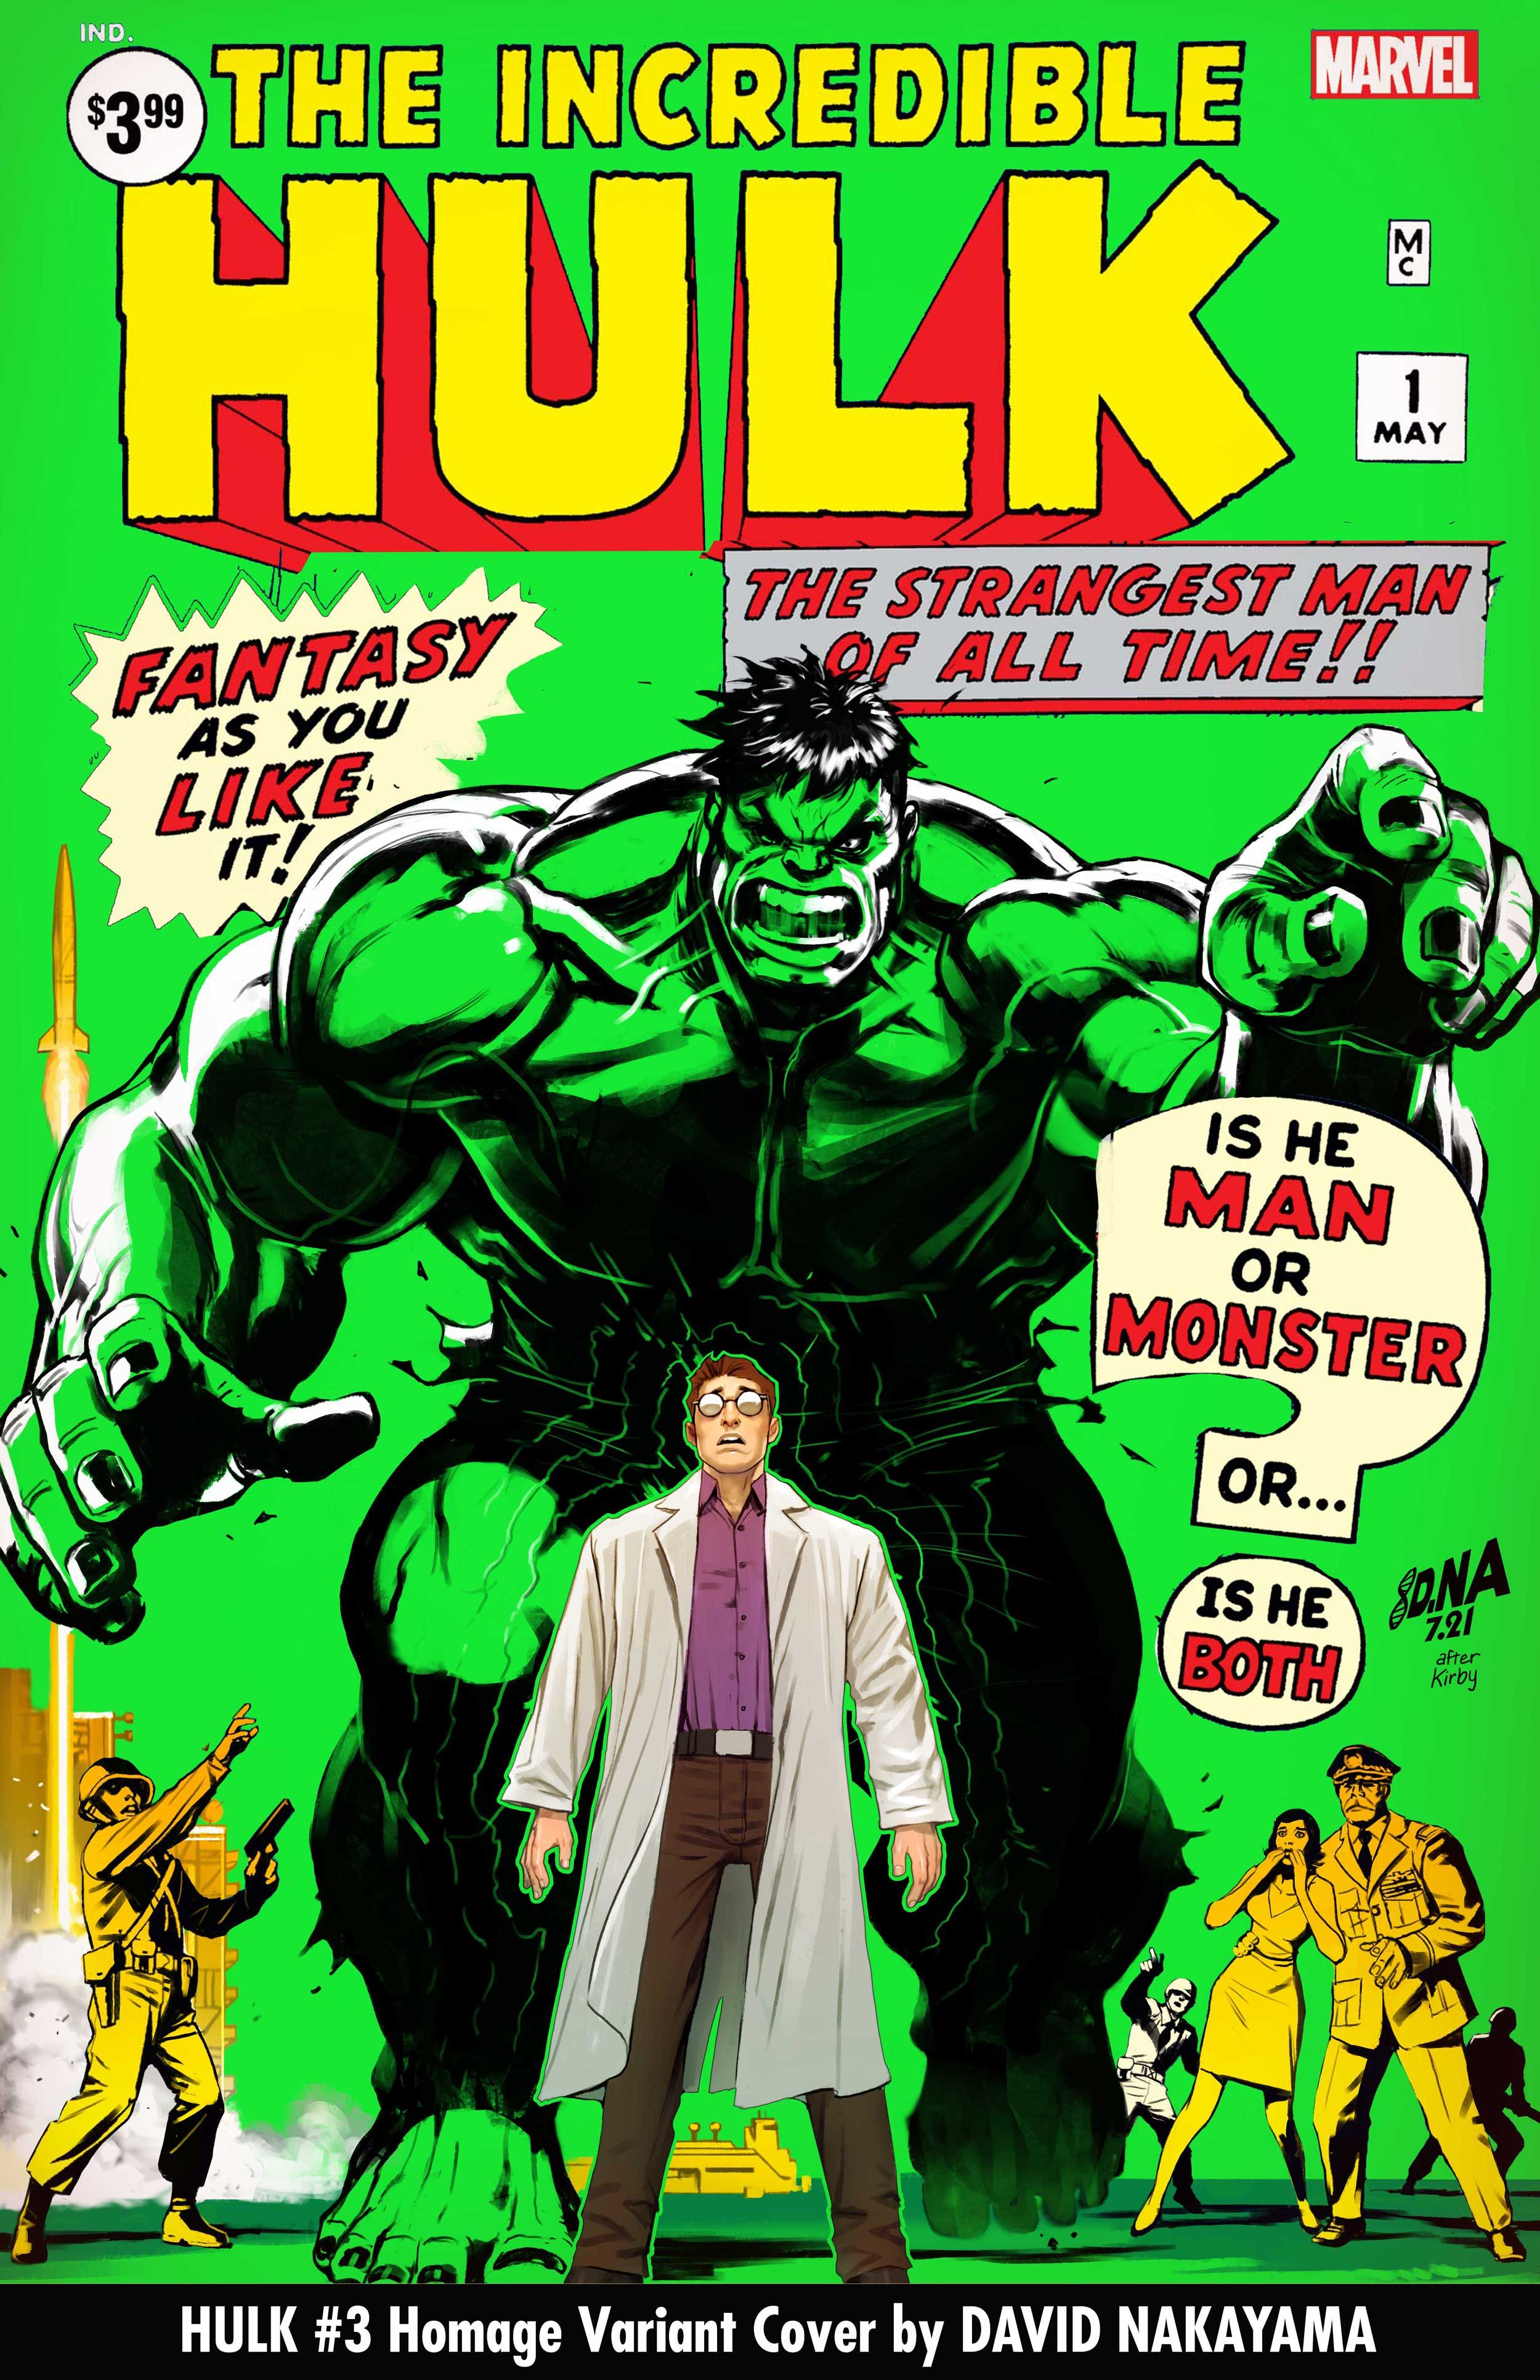 David Nakayama Homage Variant Cover for Hulk #3